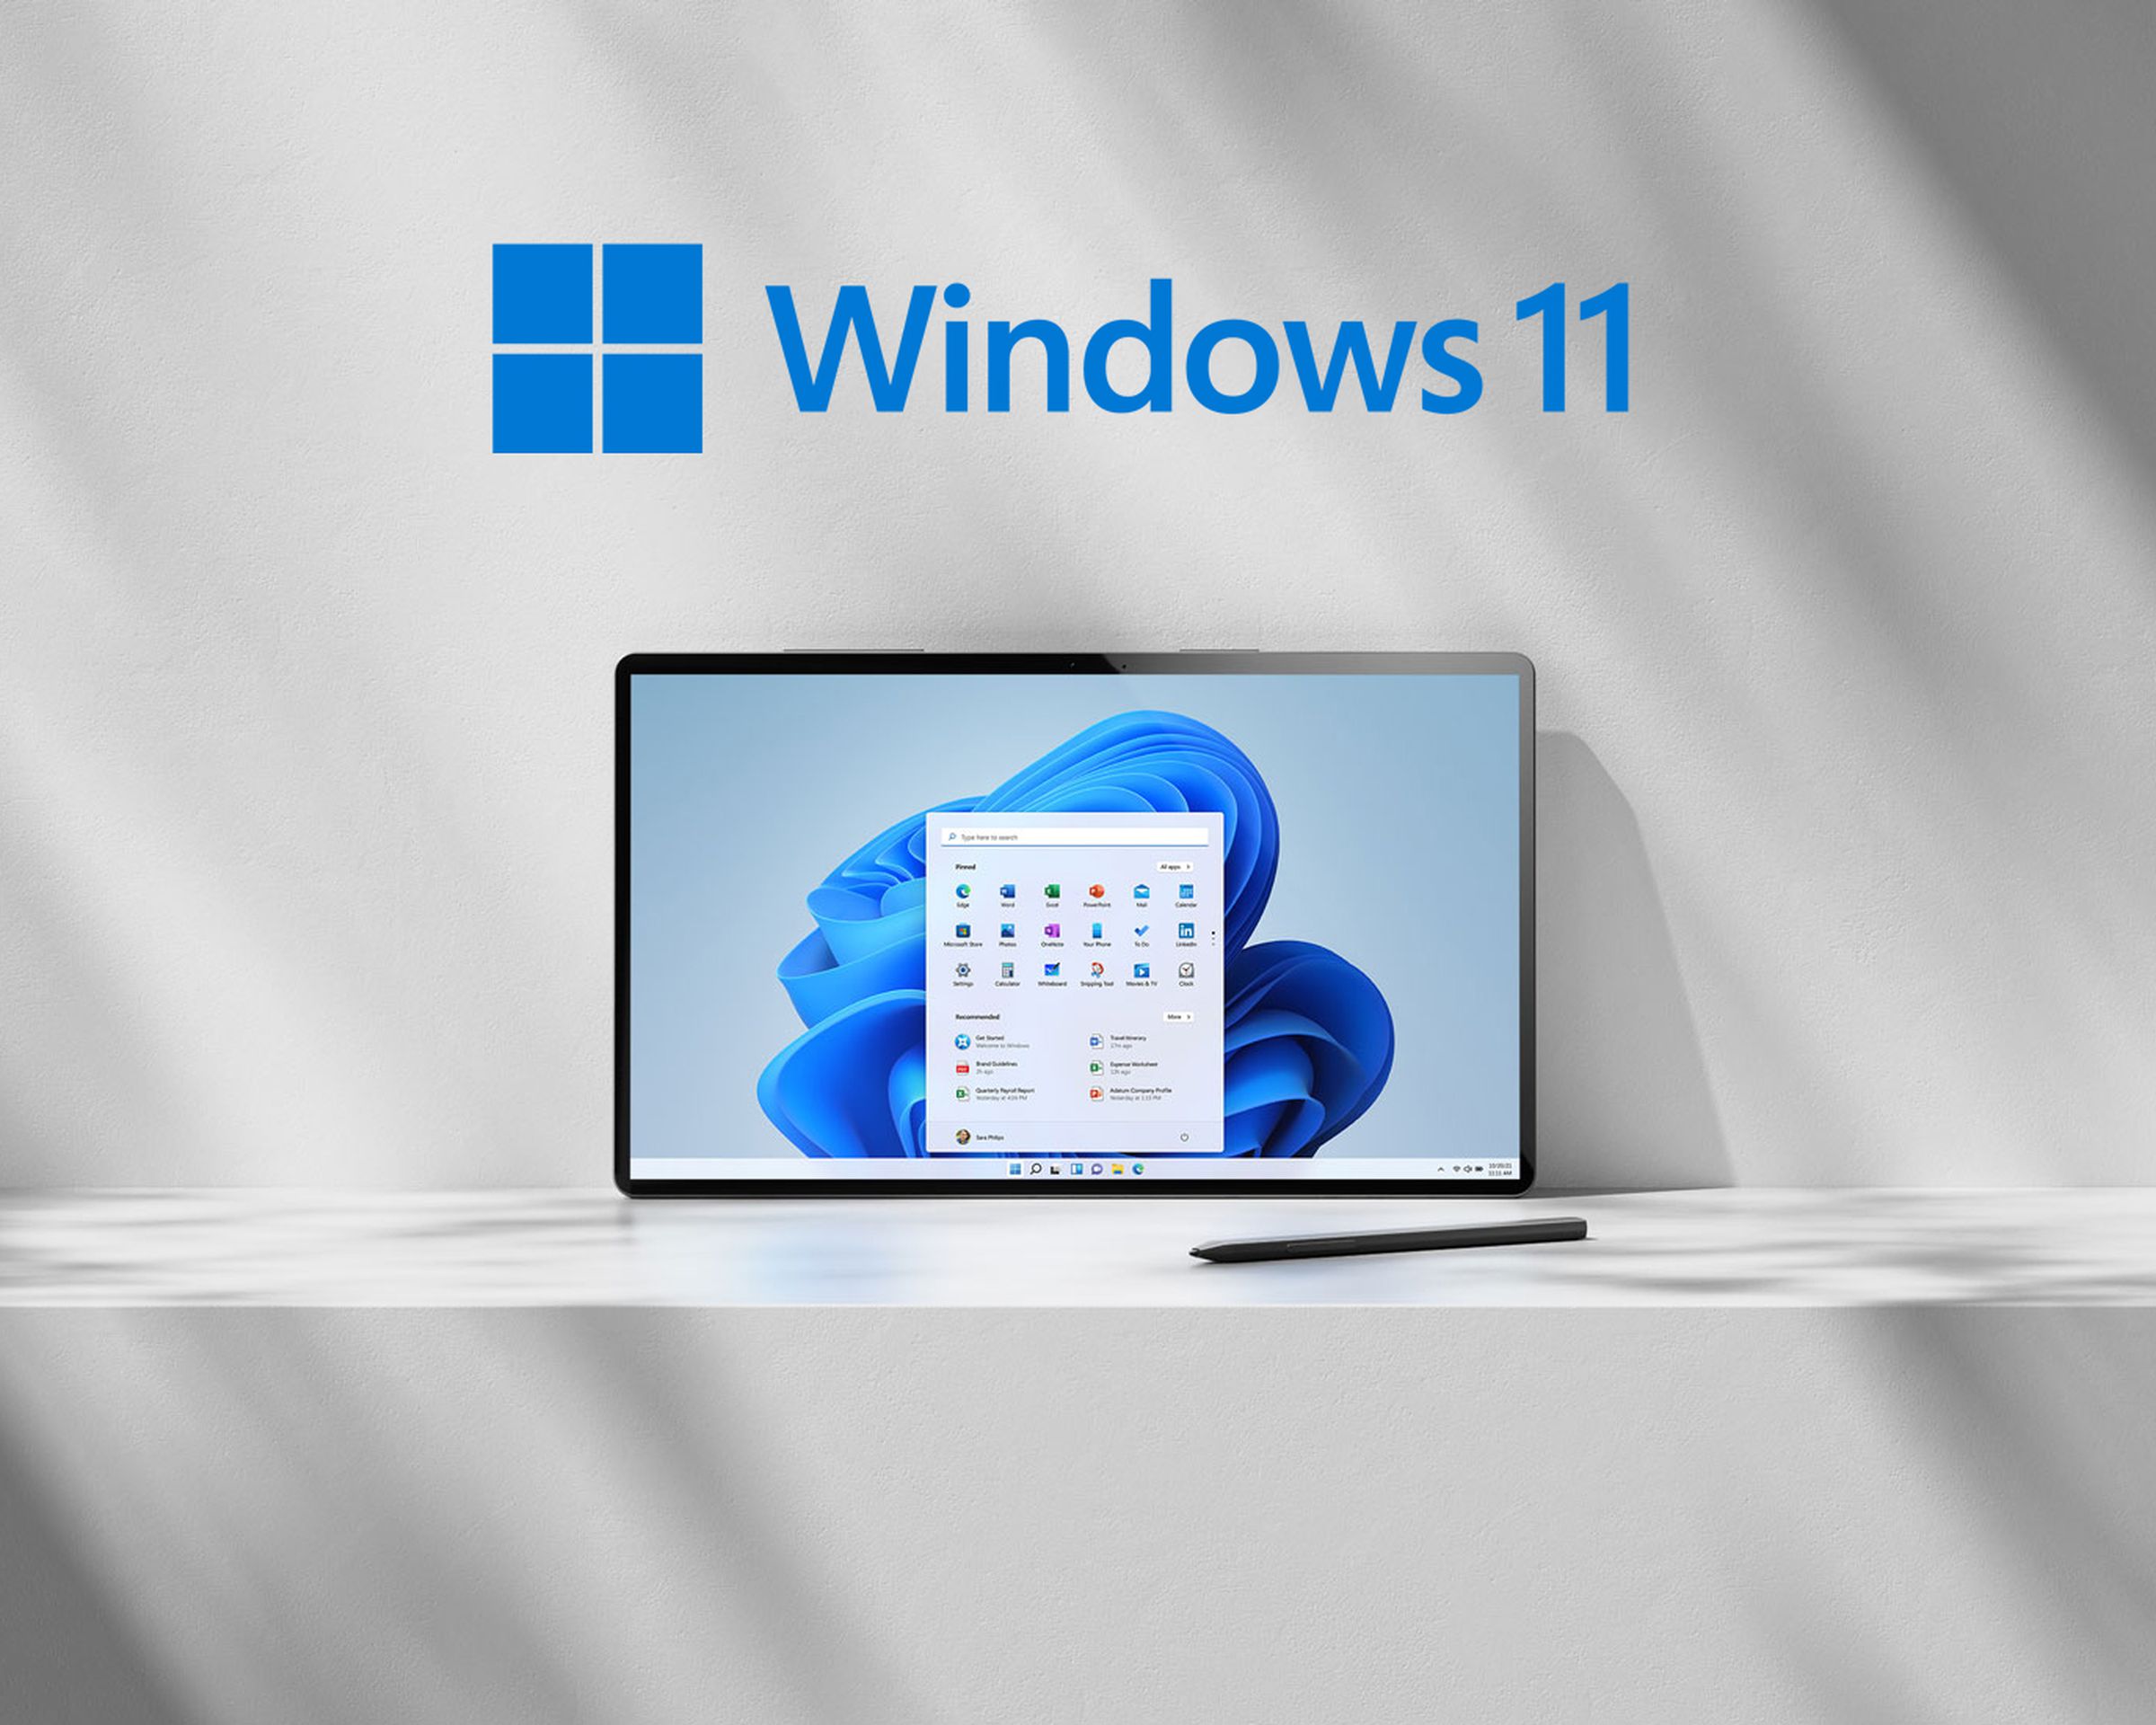 Illustration of Windows 11 running on a tablet